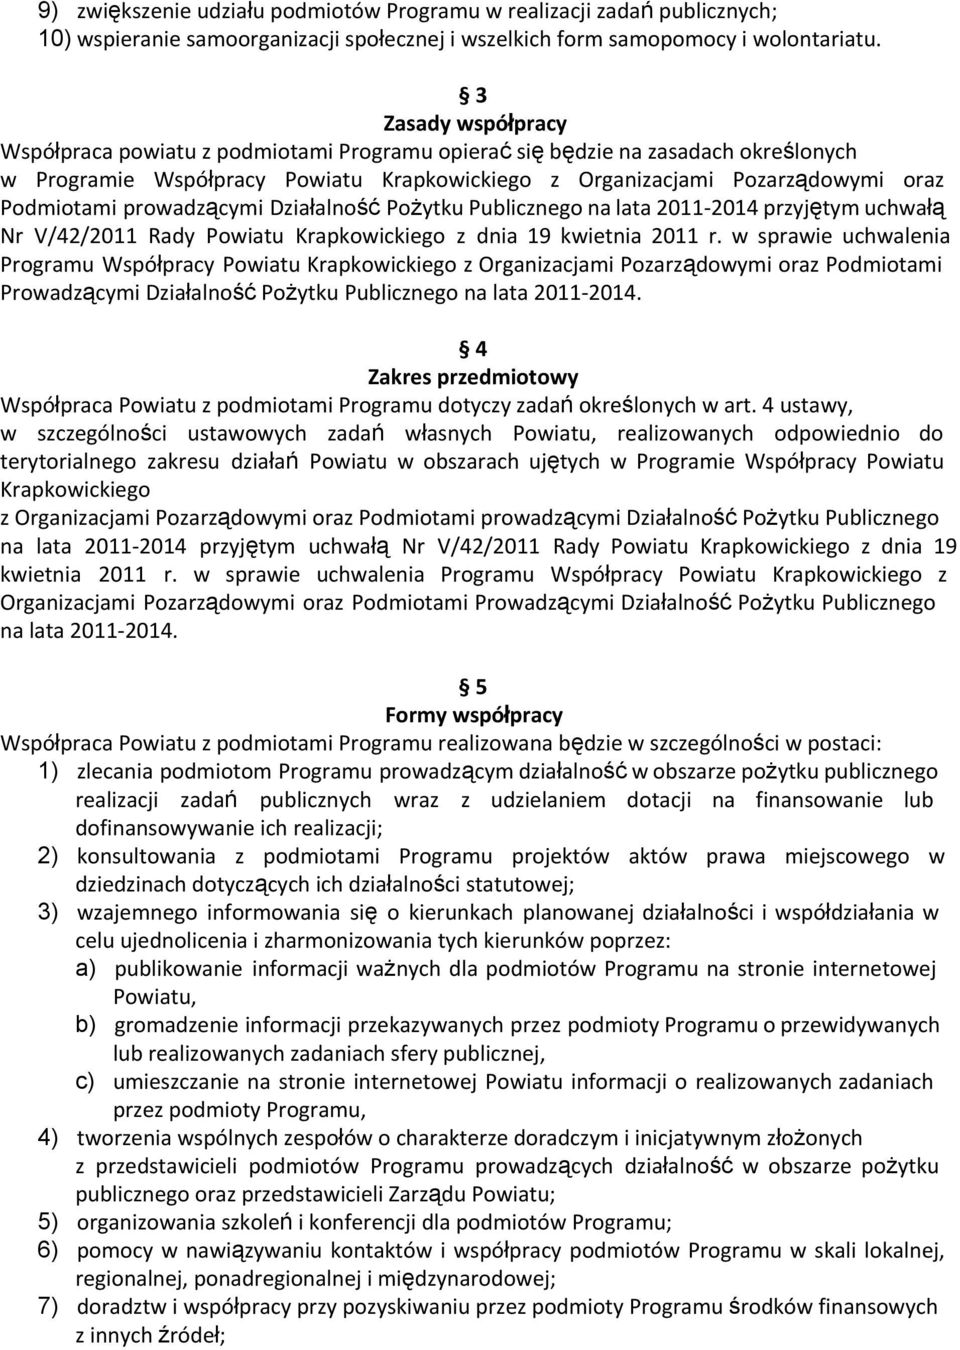 prowadzącymi Działalność Pożytku Publicznego na lata 2011-2014 przyjętym uchwałą Nr V/42/2011 Rady Powiatu Krapkowickiego z dnia 19 kwietnia 2011 r.